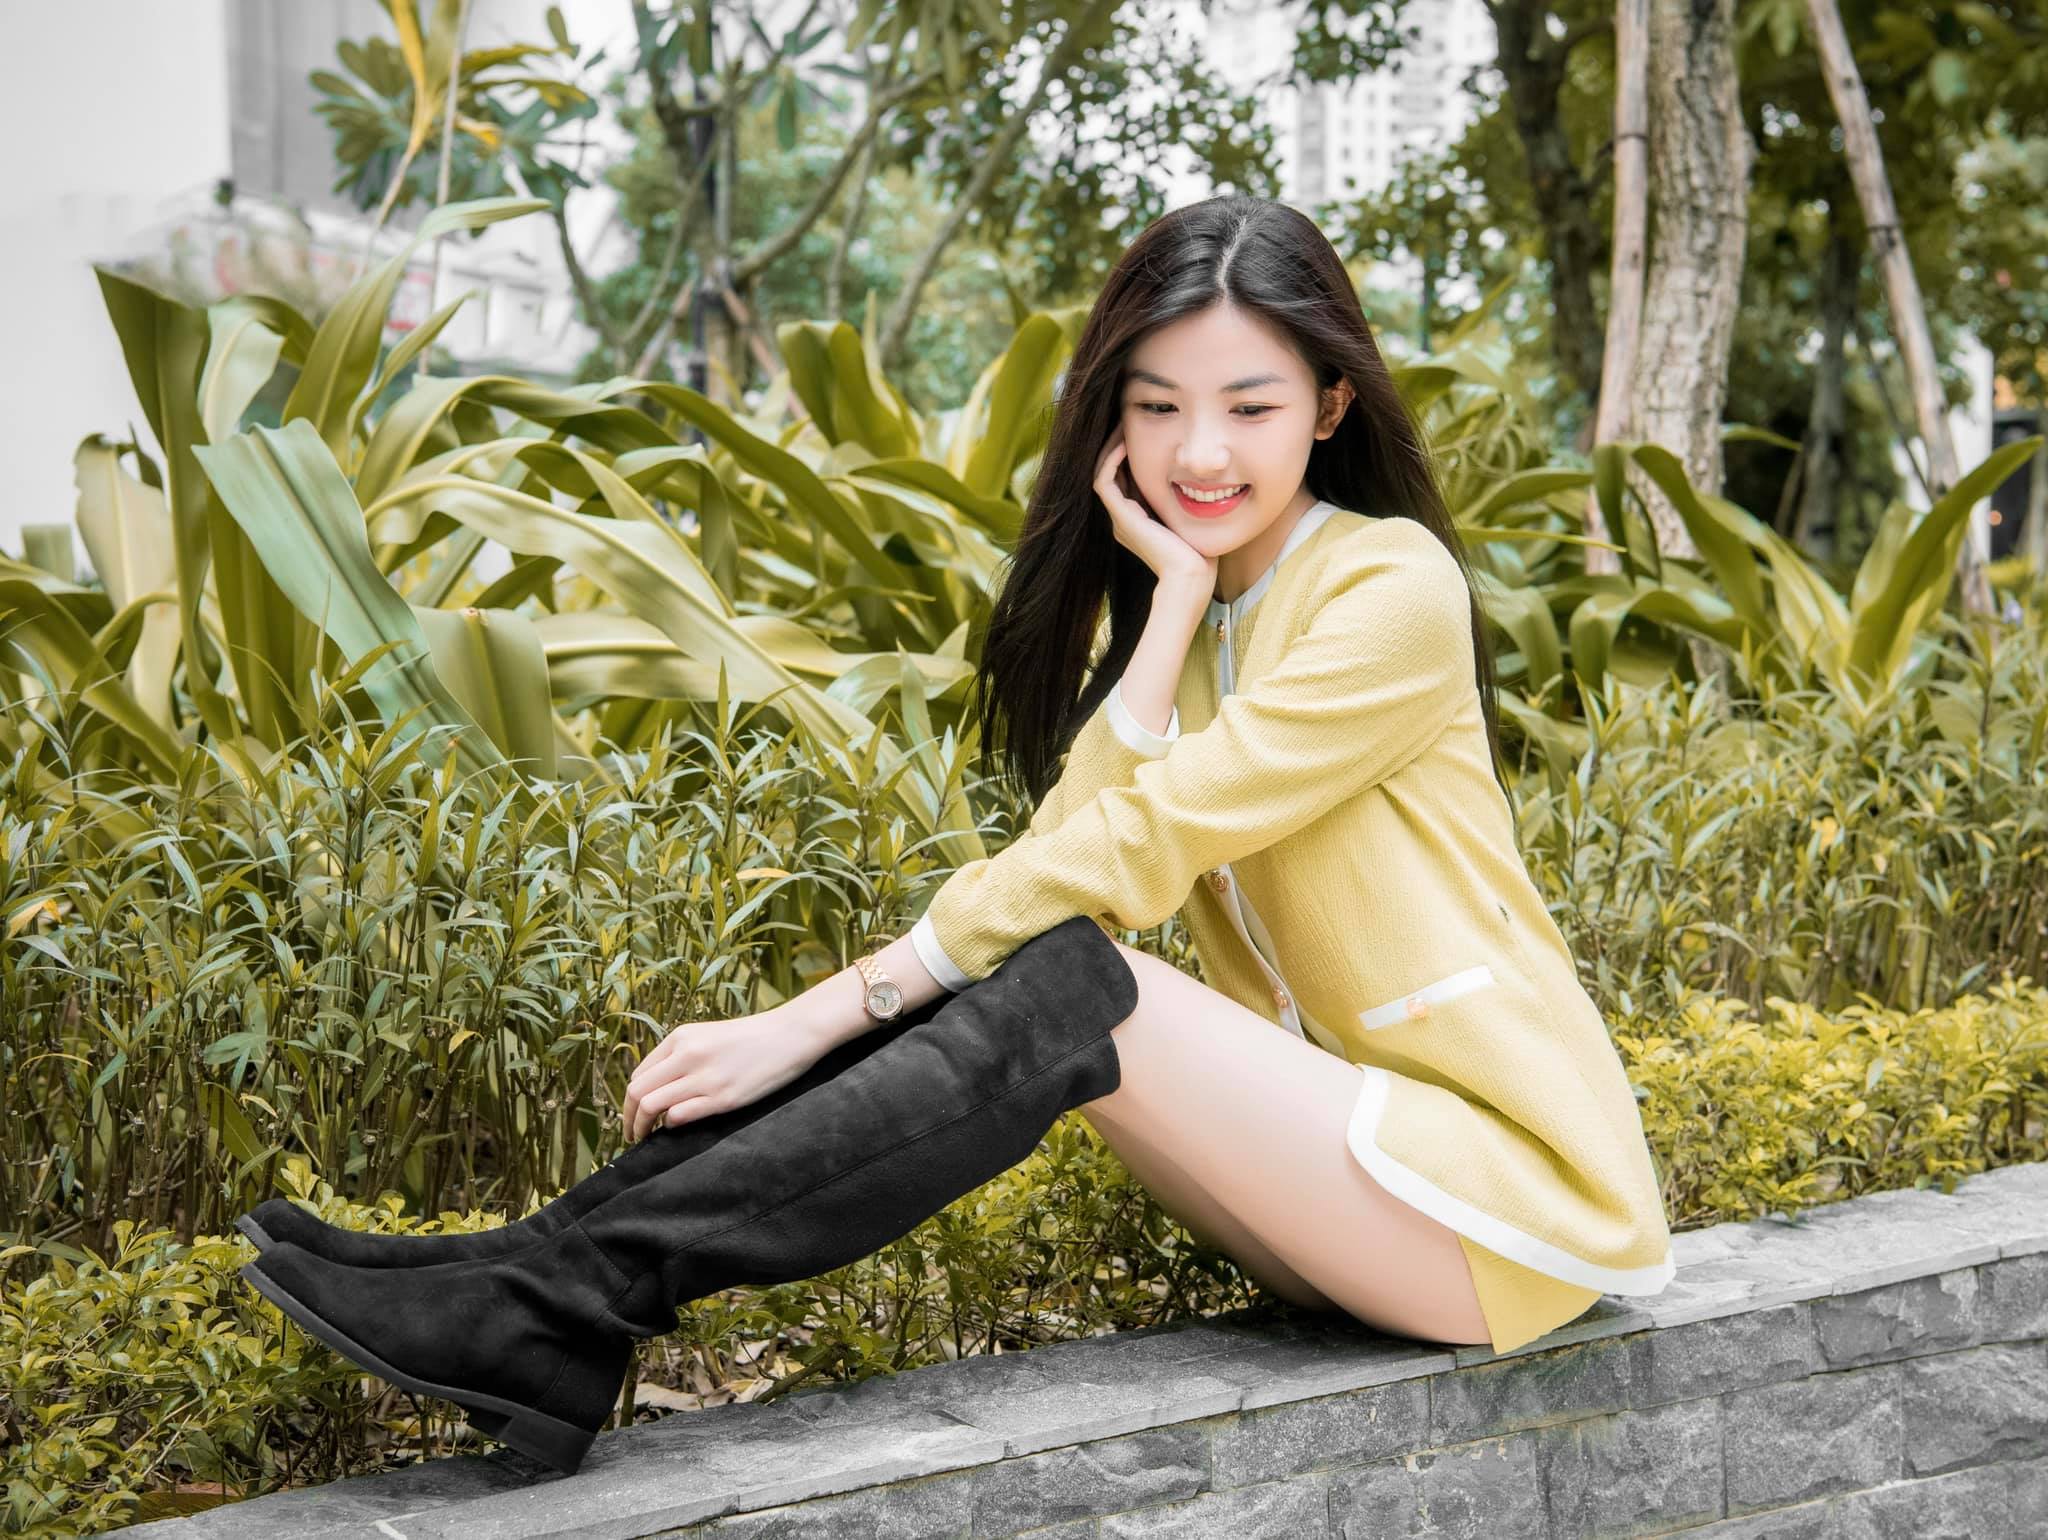 Nữ diễn viên quê Thanh Hóa mặt xinh, dáng đẹp cao hơn 1m70 chẳng thua kém hoa hậu - 6